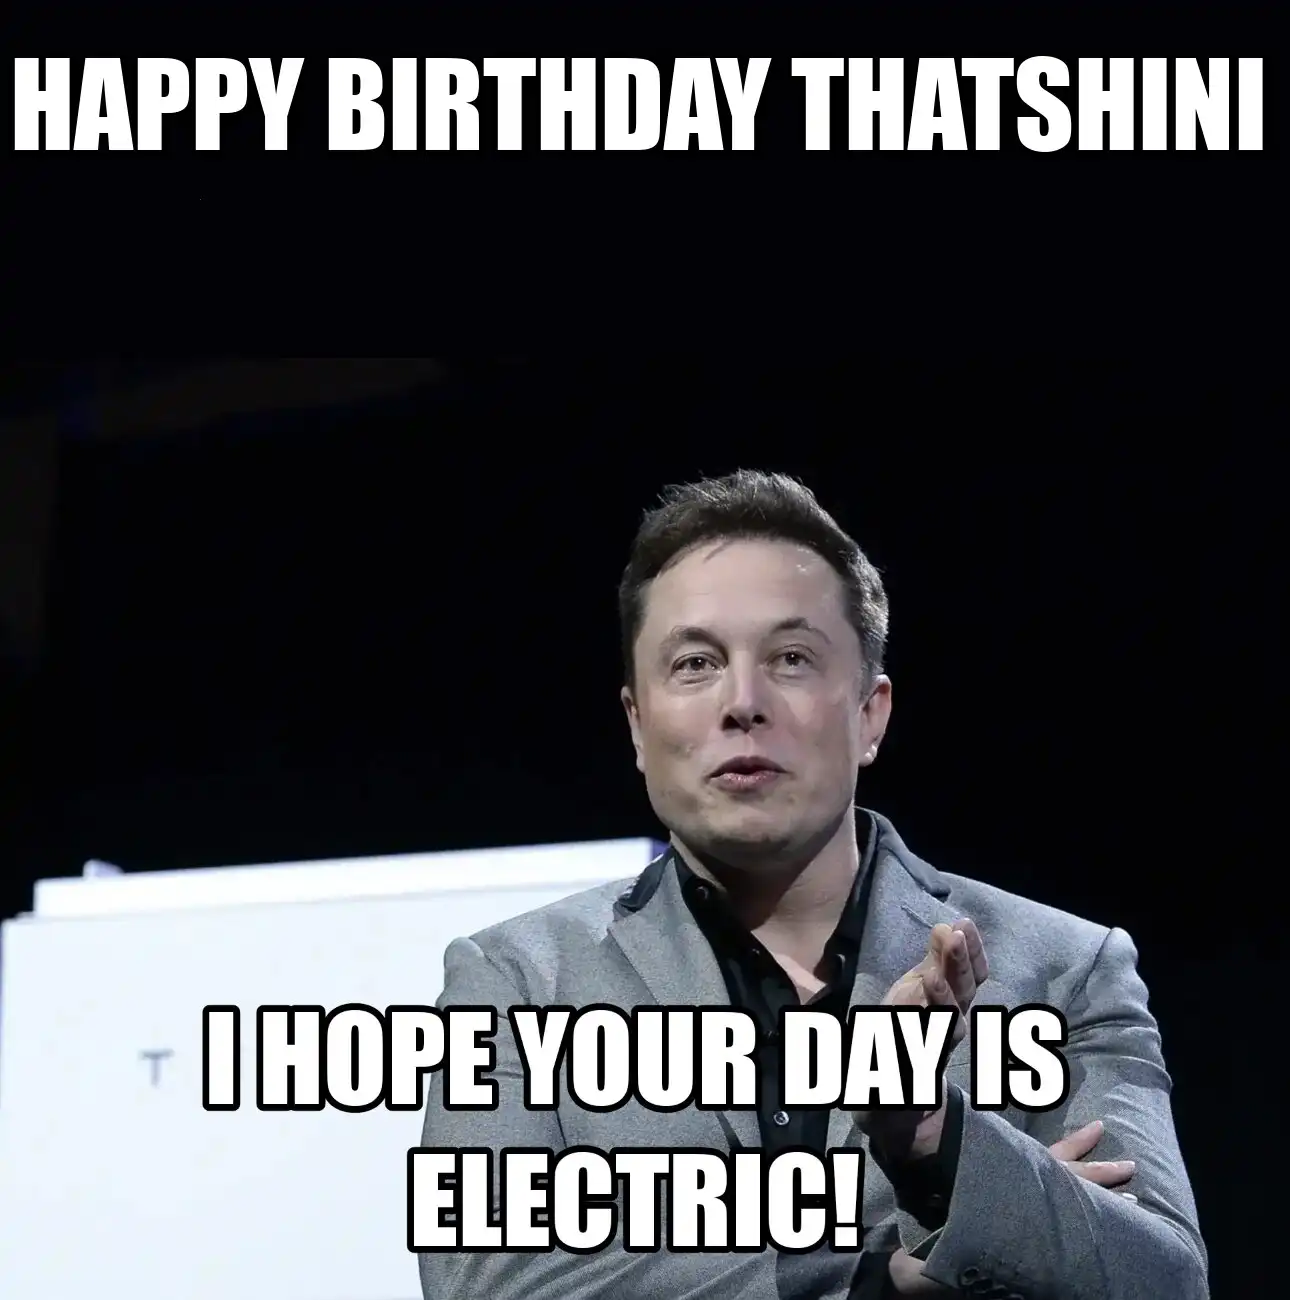 Happy Birthday Thatshini I Hope Your Day Is Electric Meme